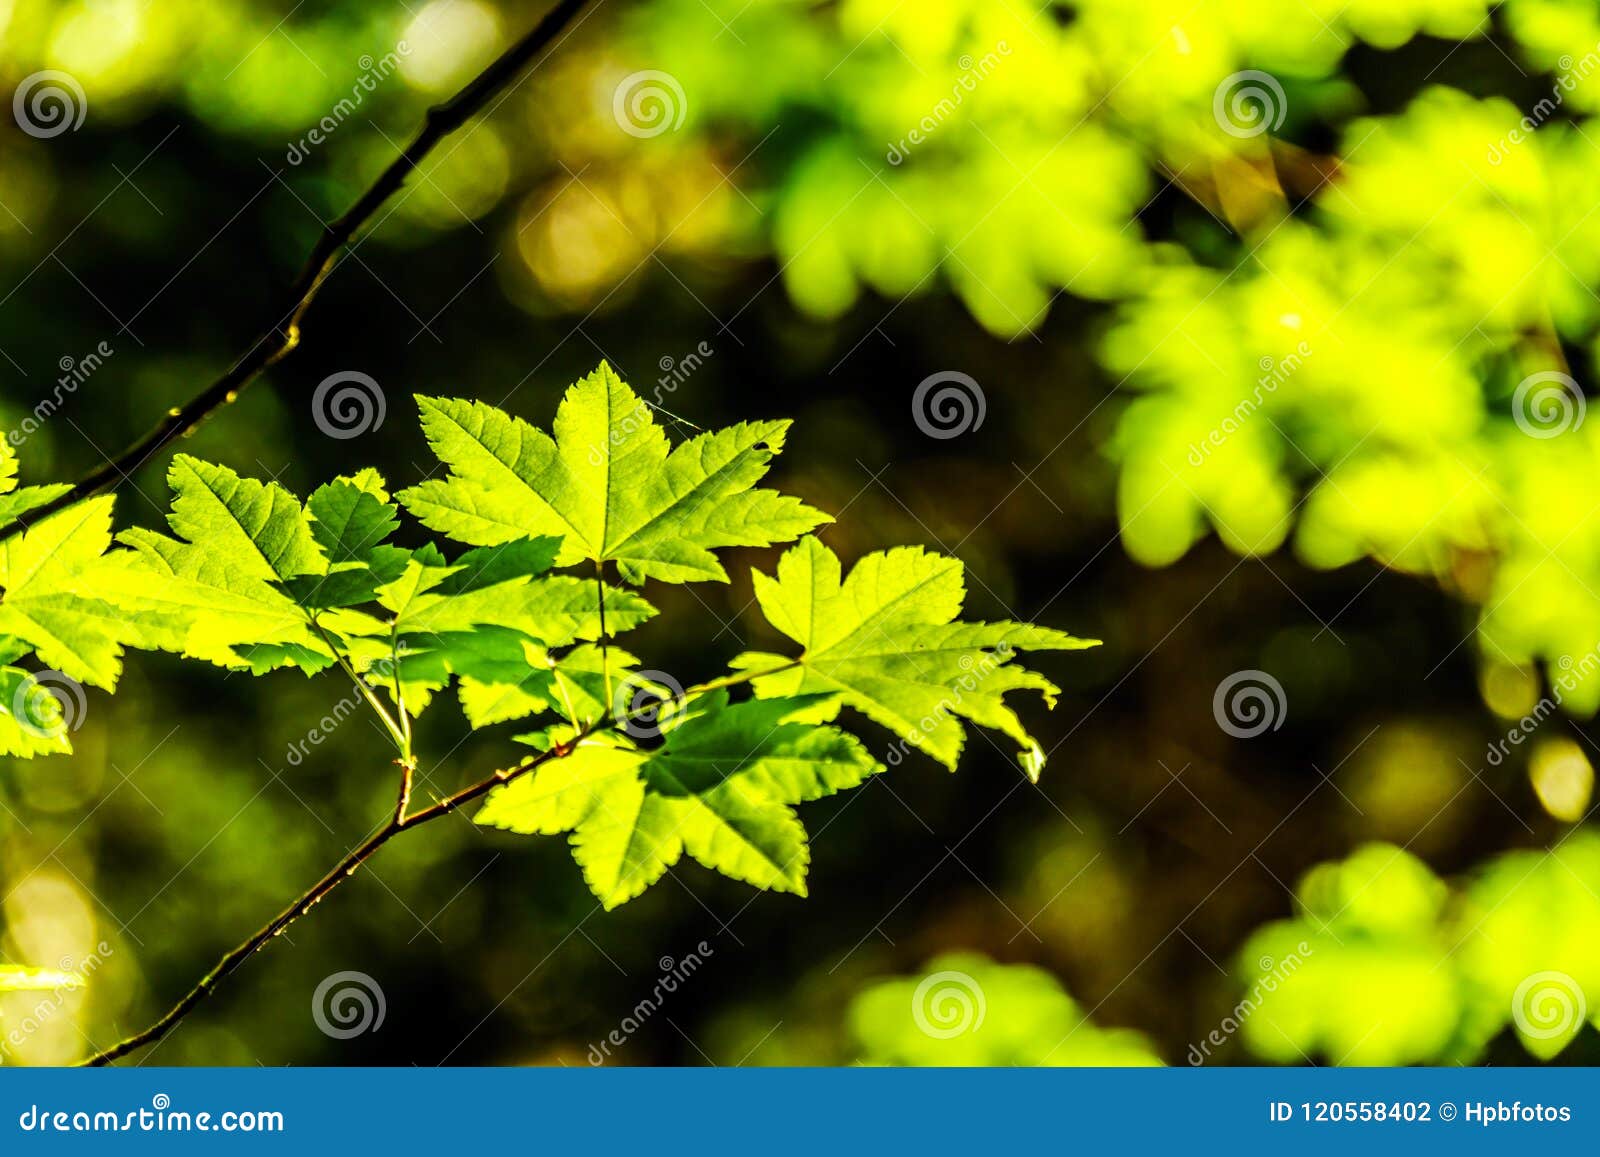 Folhas de bordo verdes frescas em uma floresta no Columbia Britânica, Canadá. Close up das folhas de bordo verdes frescas em uma floresta, também emblema nacional do ` s de Canadá, no Columbia Britânica, Canadá